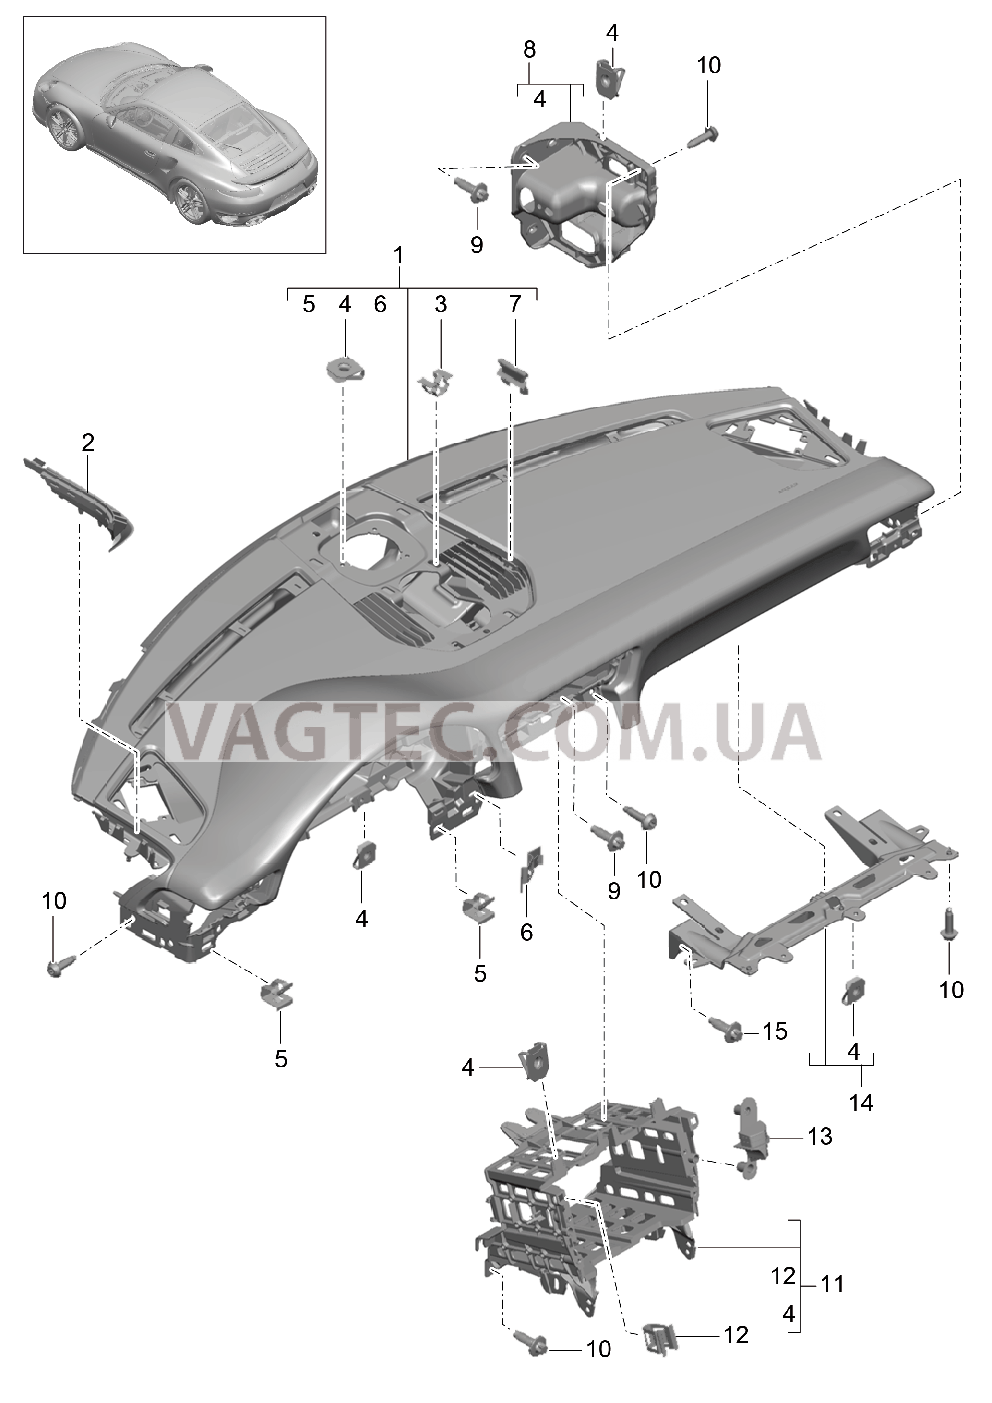 809-000 Облицовка передней панели, Верхняя часть, с, Крепежные элементы для PORSCHE Porsche991Turbo 2014-2017